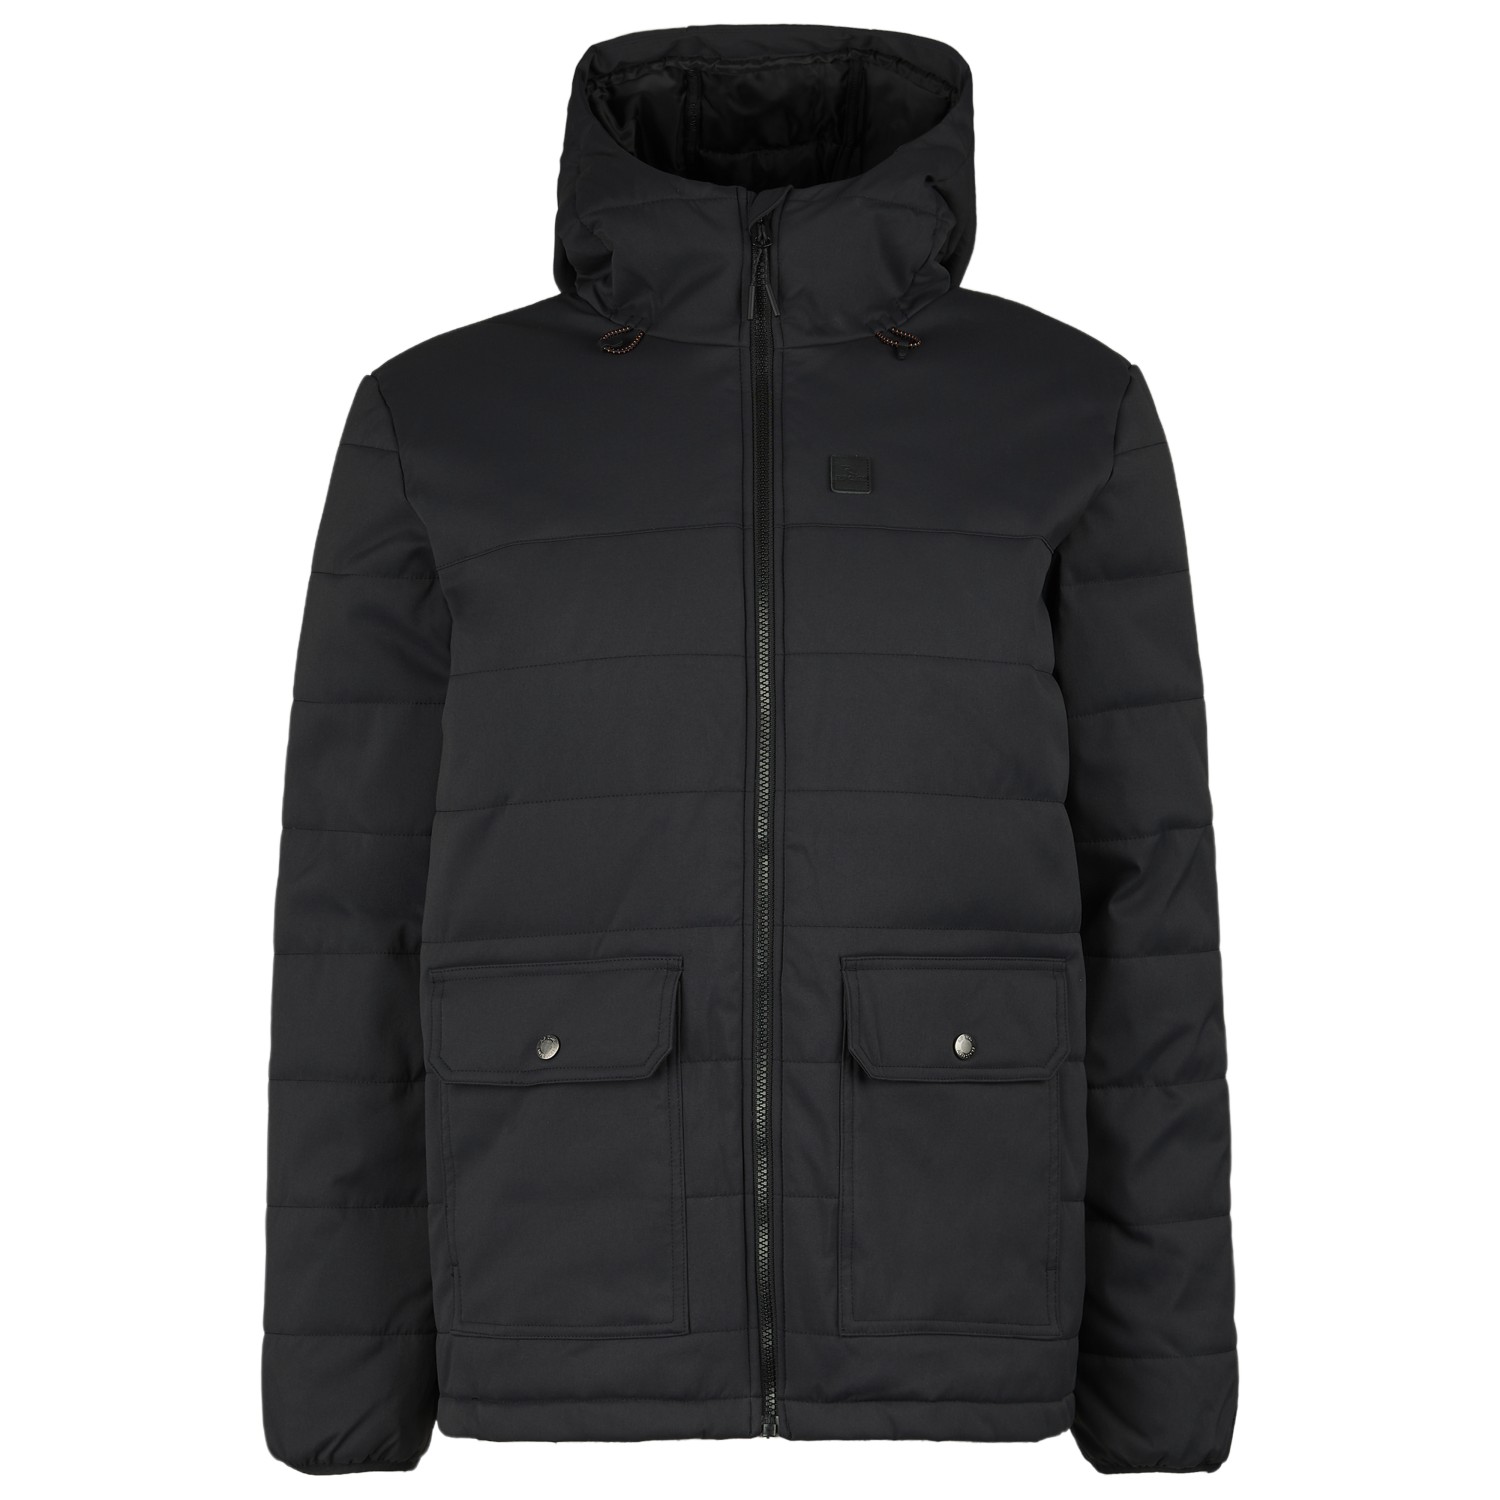 Зимняя куртка Rip Curl Anti Series Ridge, черный куртка rip curl anti series ridge jacket цвет90 black размер xs